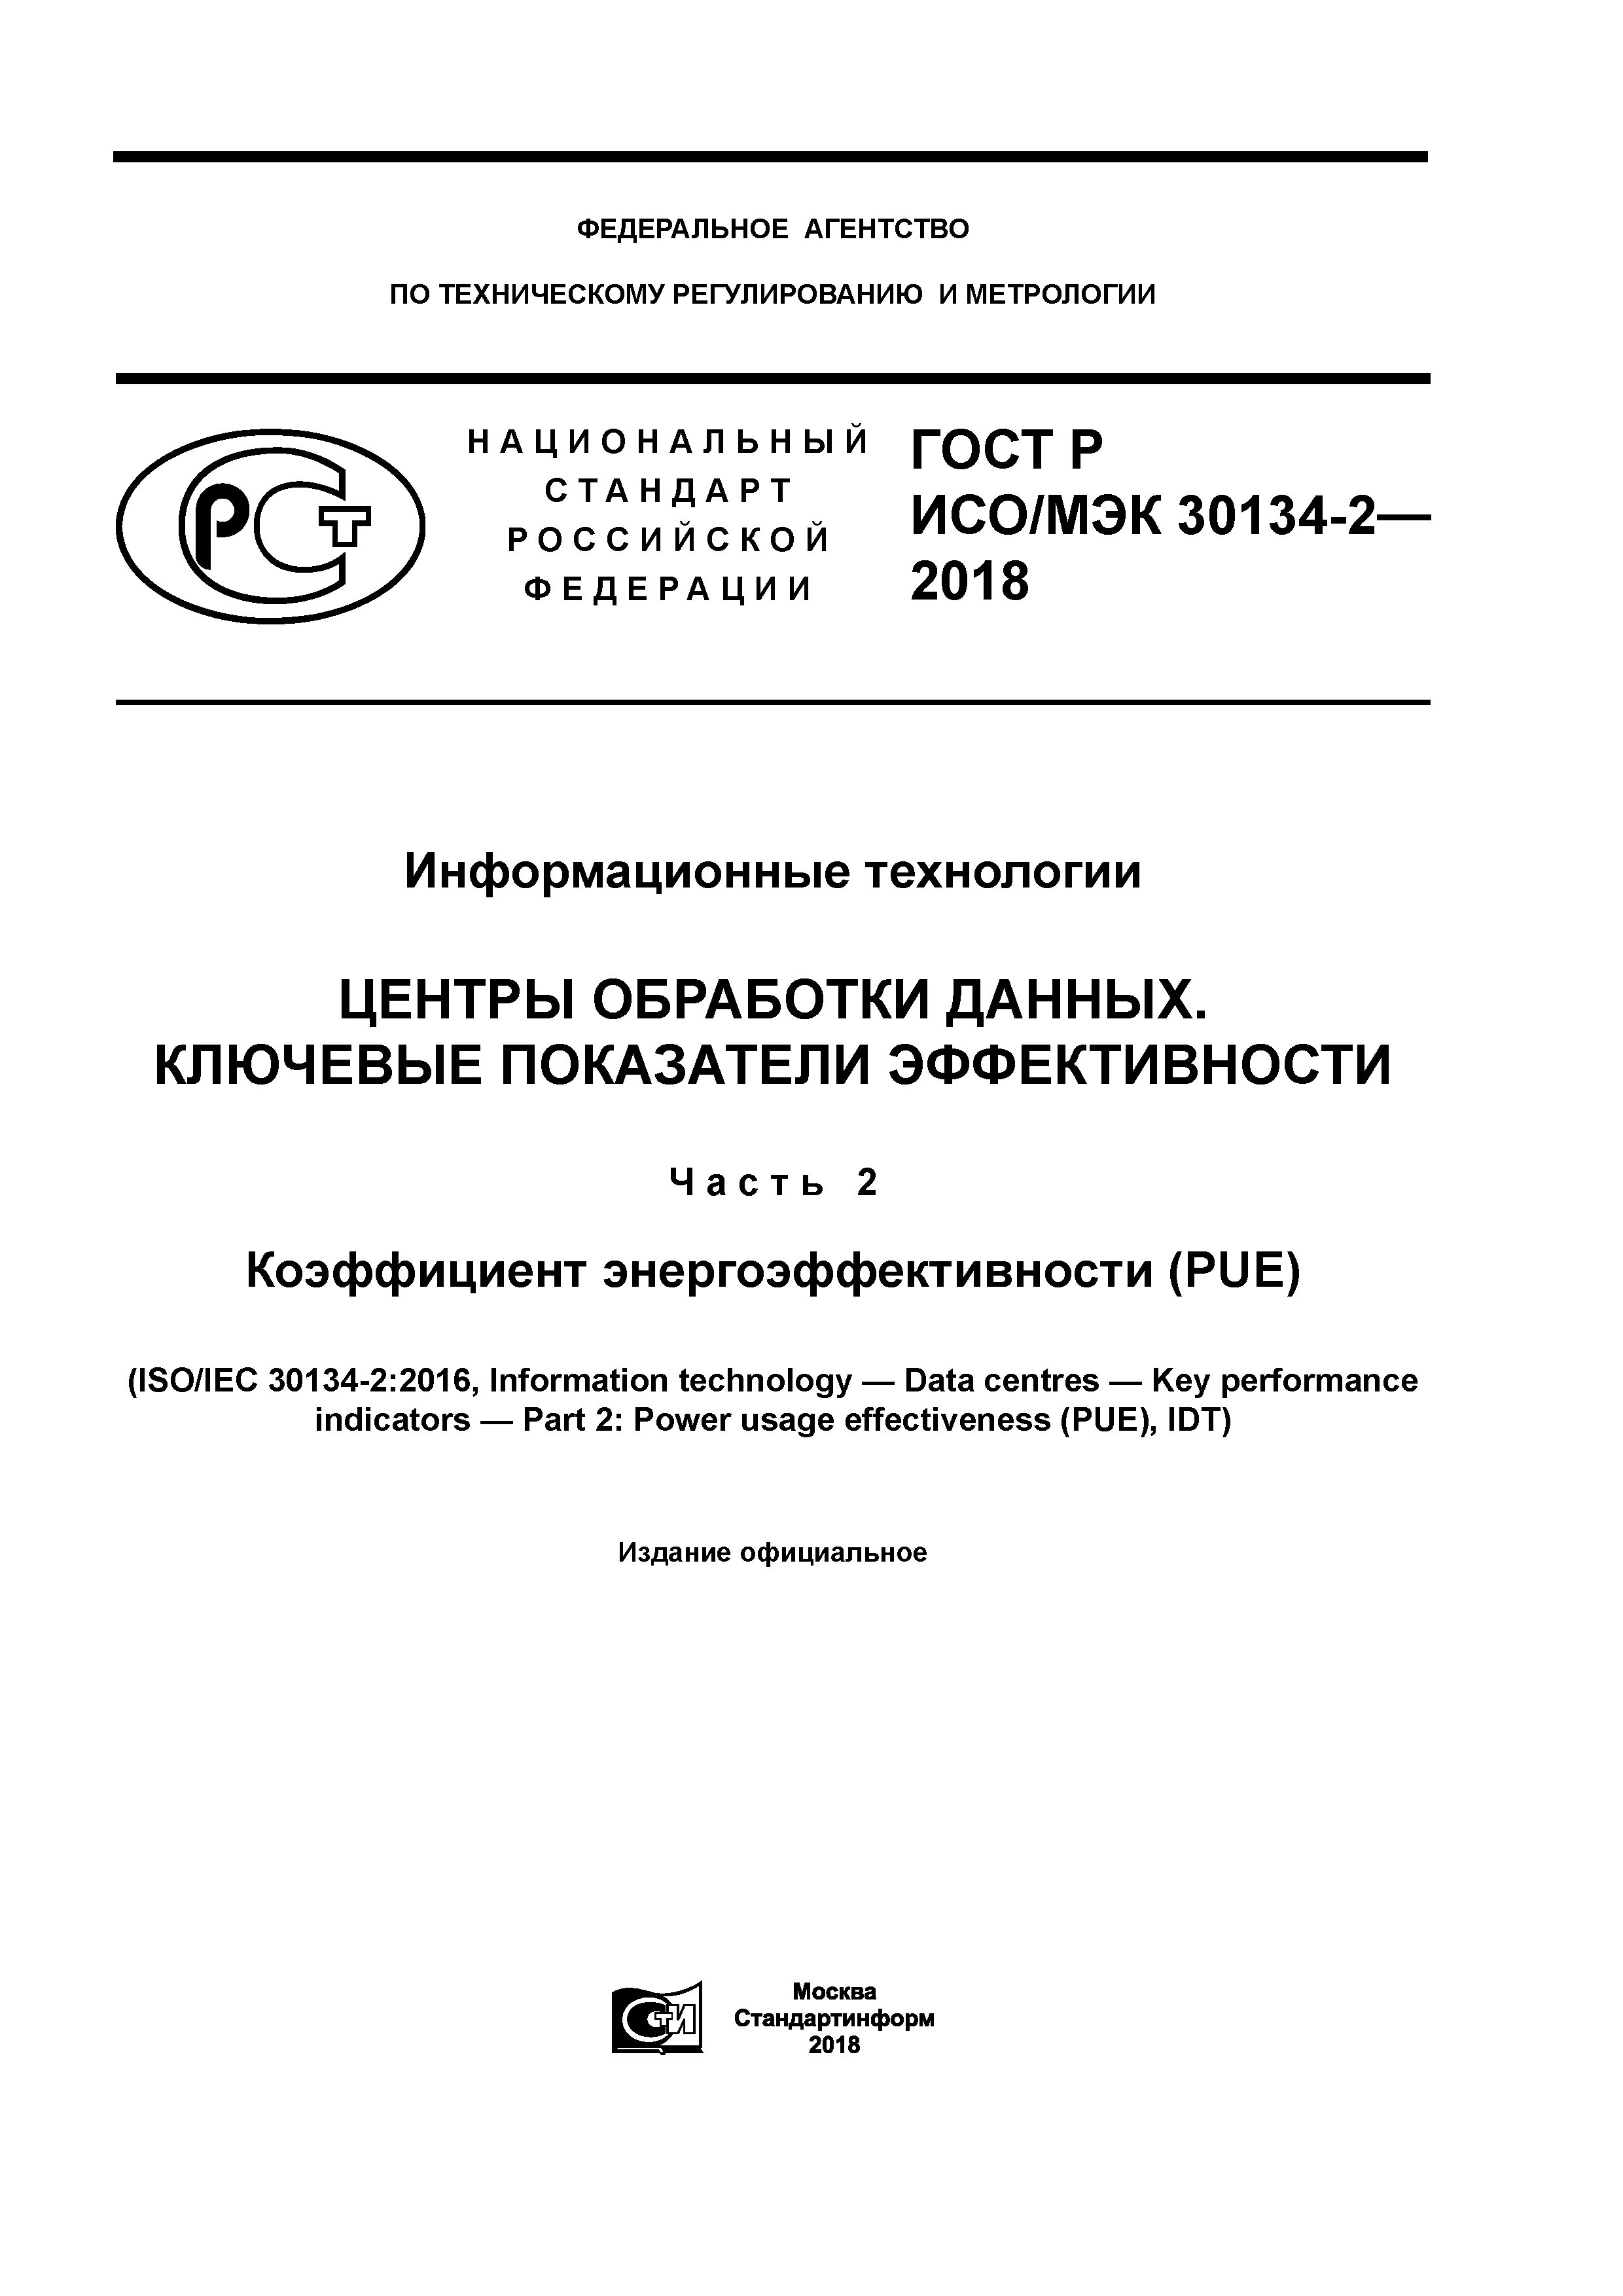 ГОСТ Р ИСО/МЭК 30134-2-2018